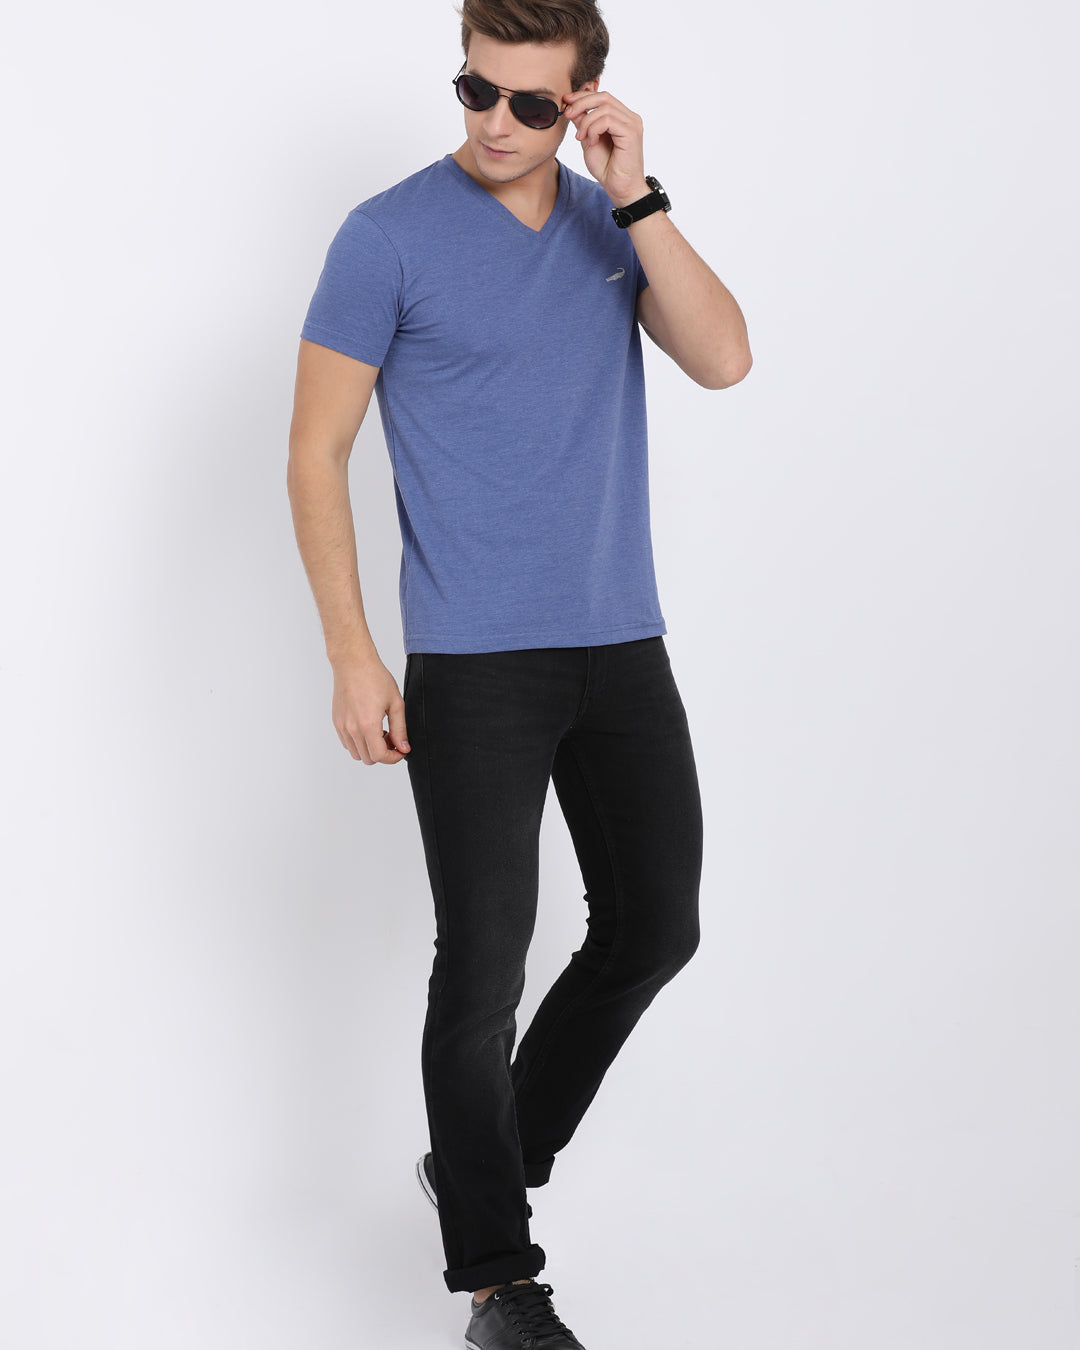 Men's Solid V Neck Half Sleeve Cotton T-Shirt - BLUE MELANGE